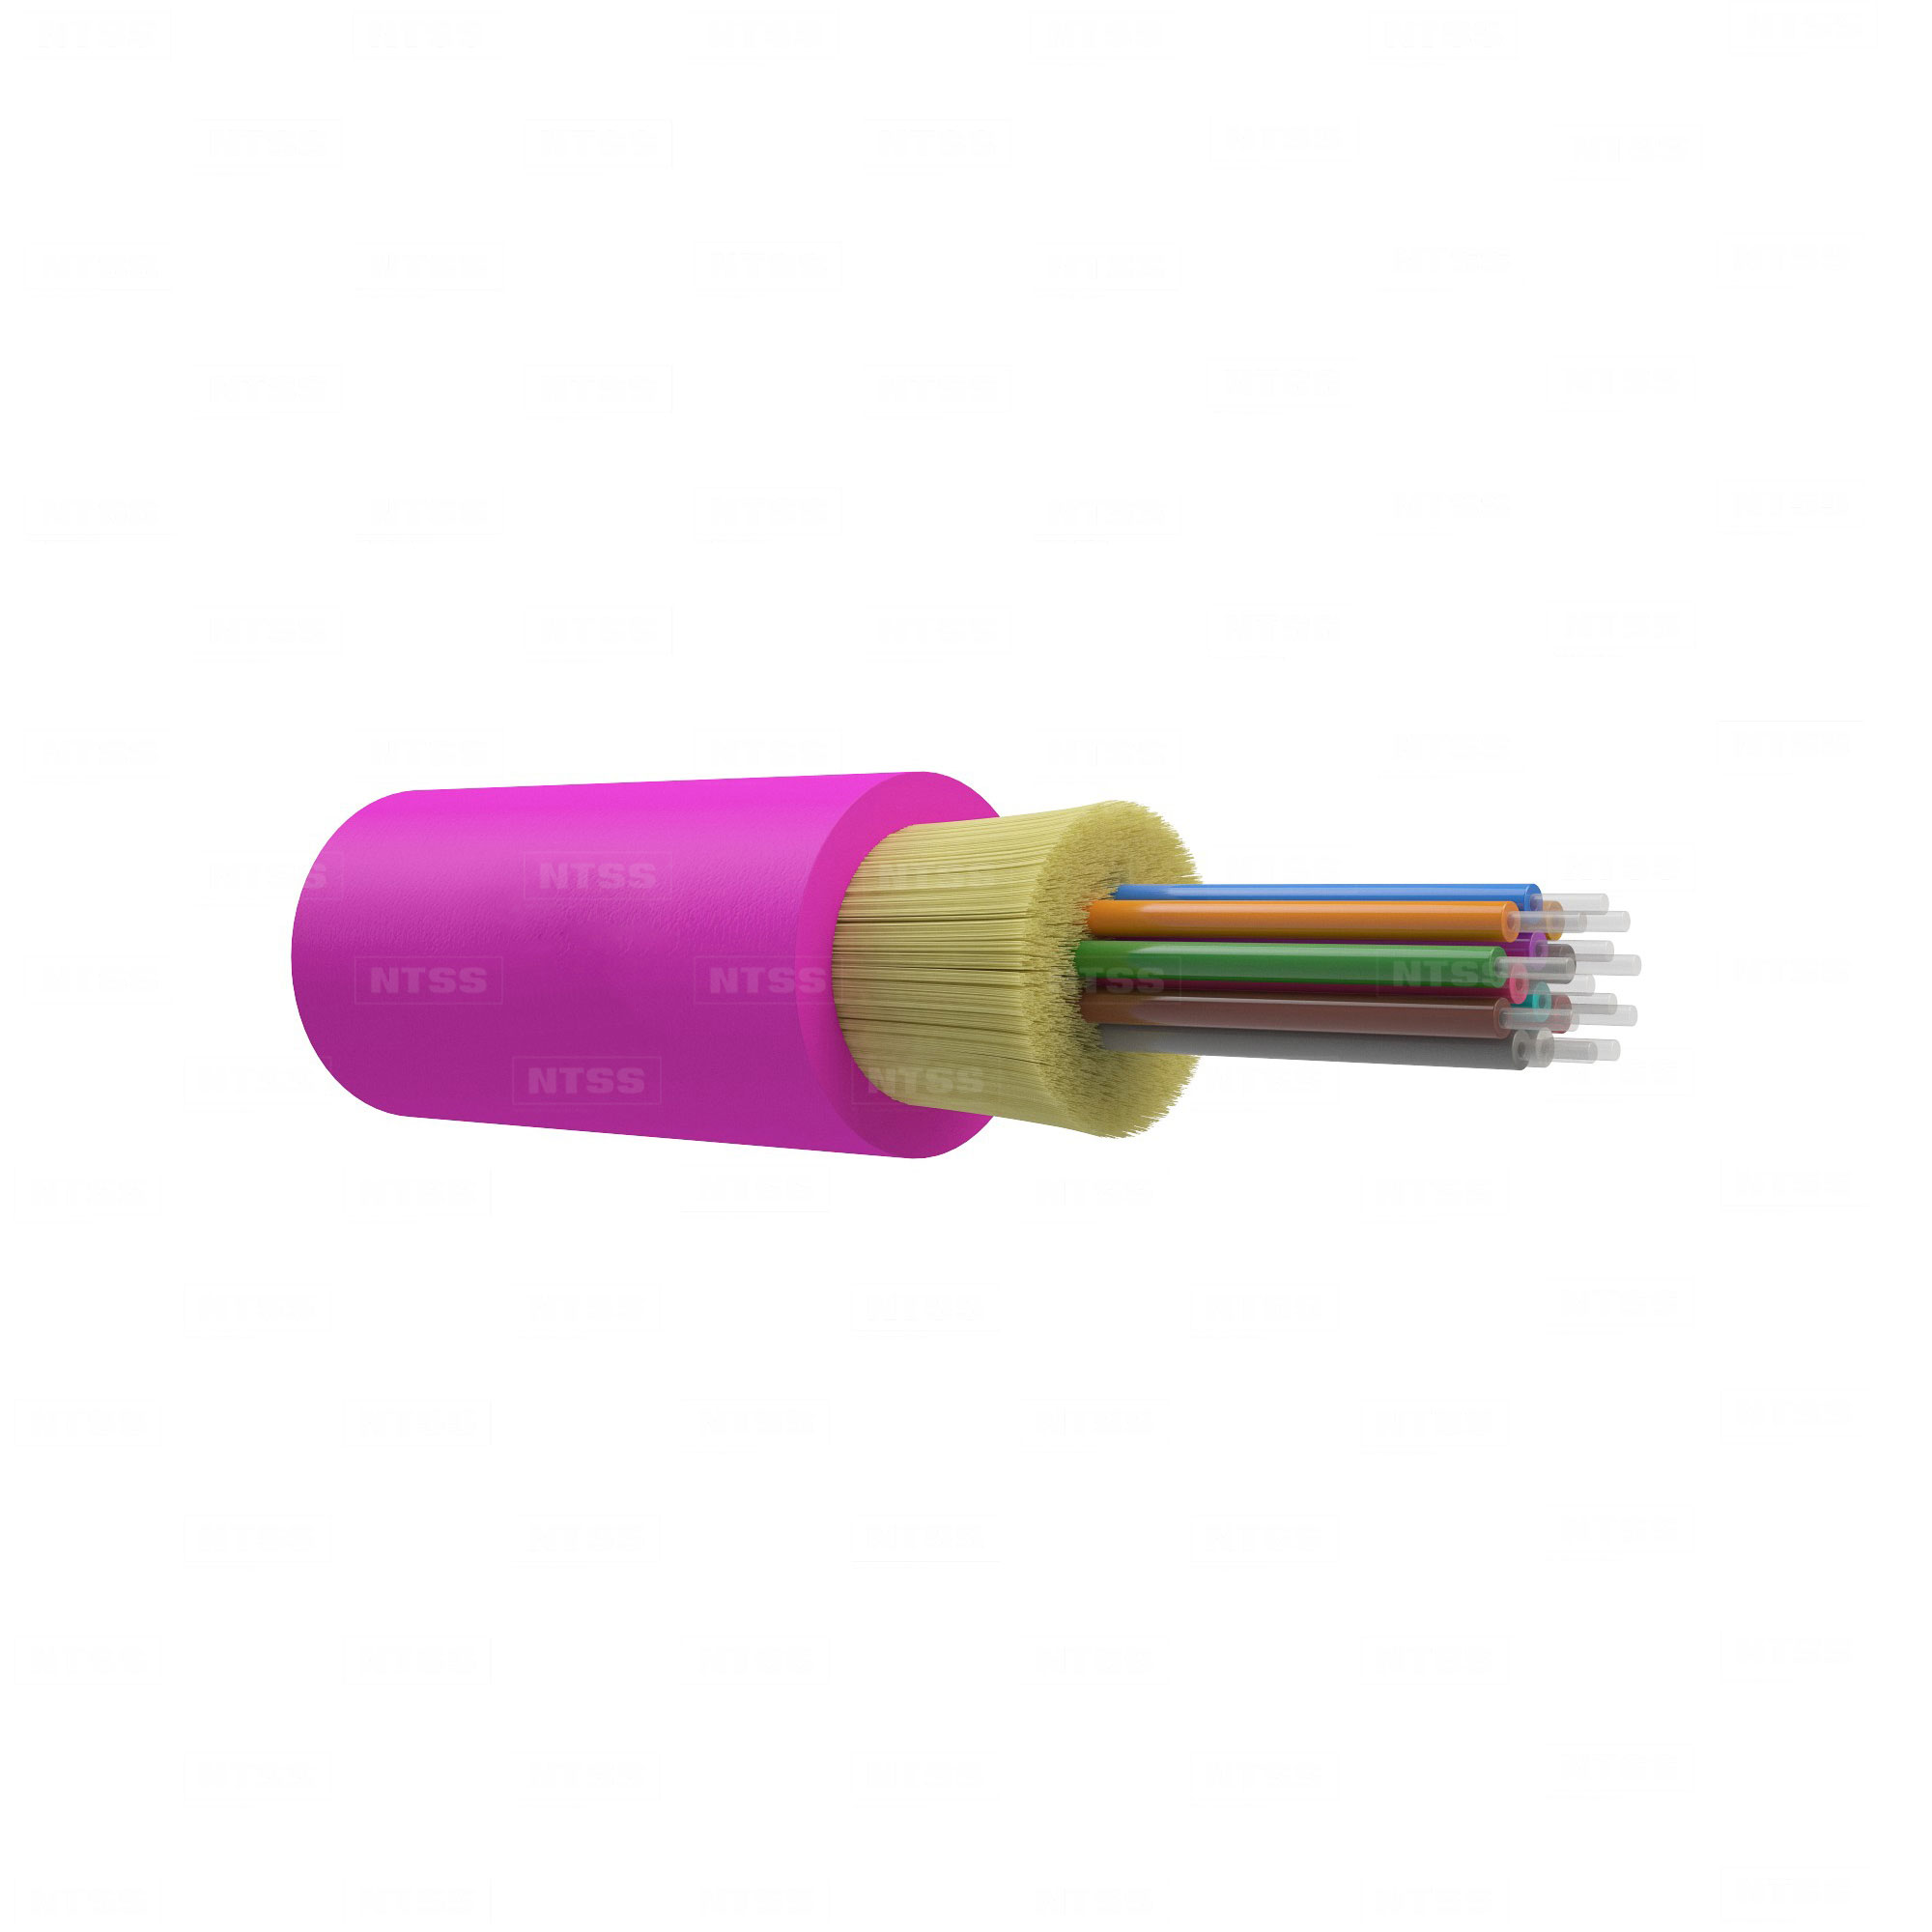 Оптический кабель распределительный для MPO/MTP, 50/125 OM4, 12 волокна, 3мм, для внутренней прокладки, LSZH